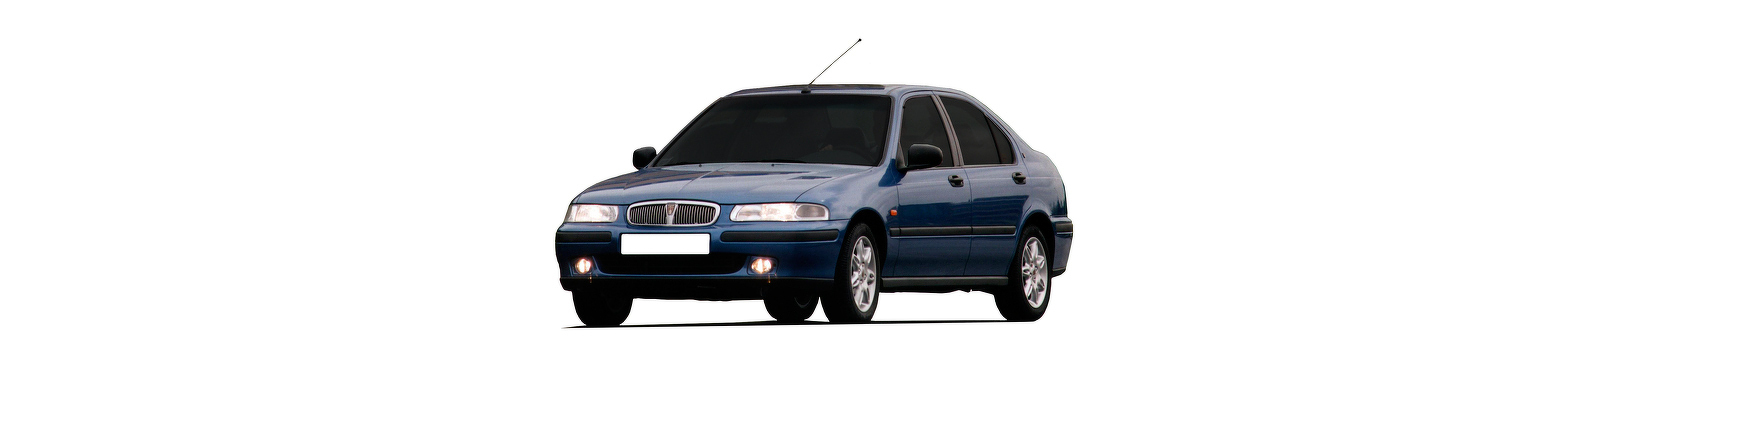 Piezas y Recambios de Rover 400 de 1995 a 2000 | Visite Veramauto.es